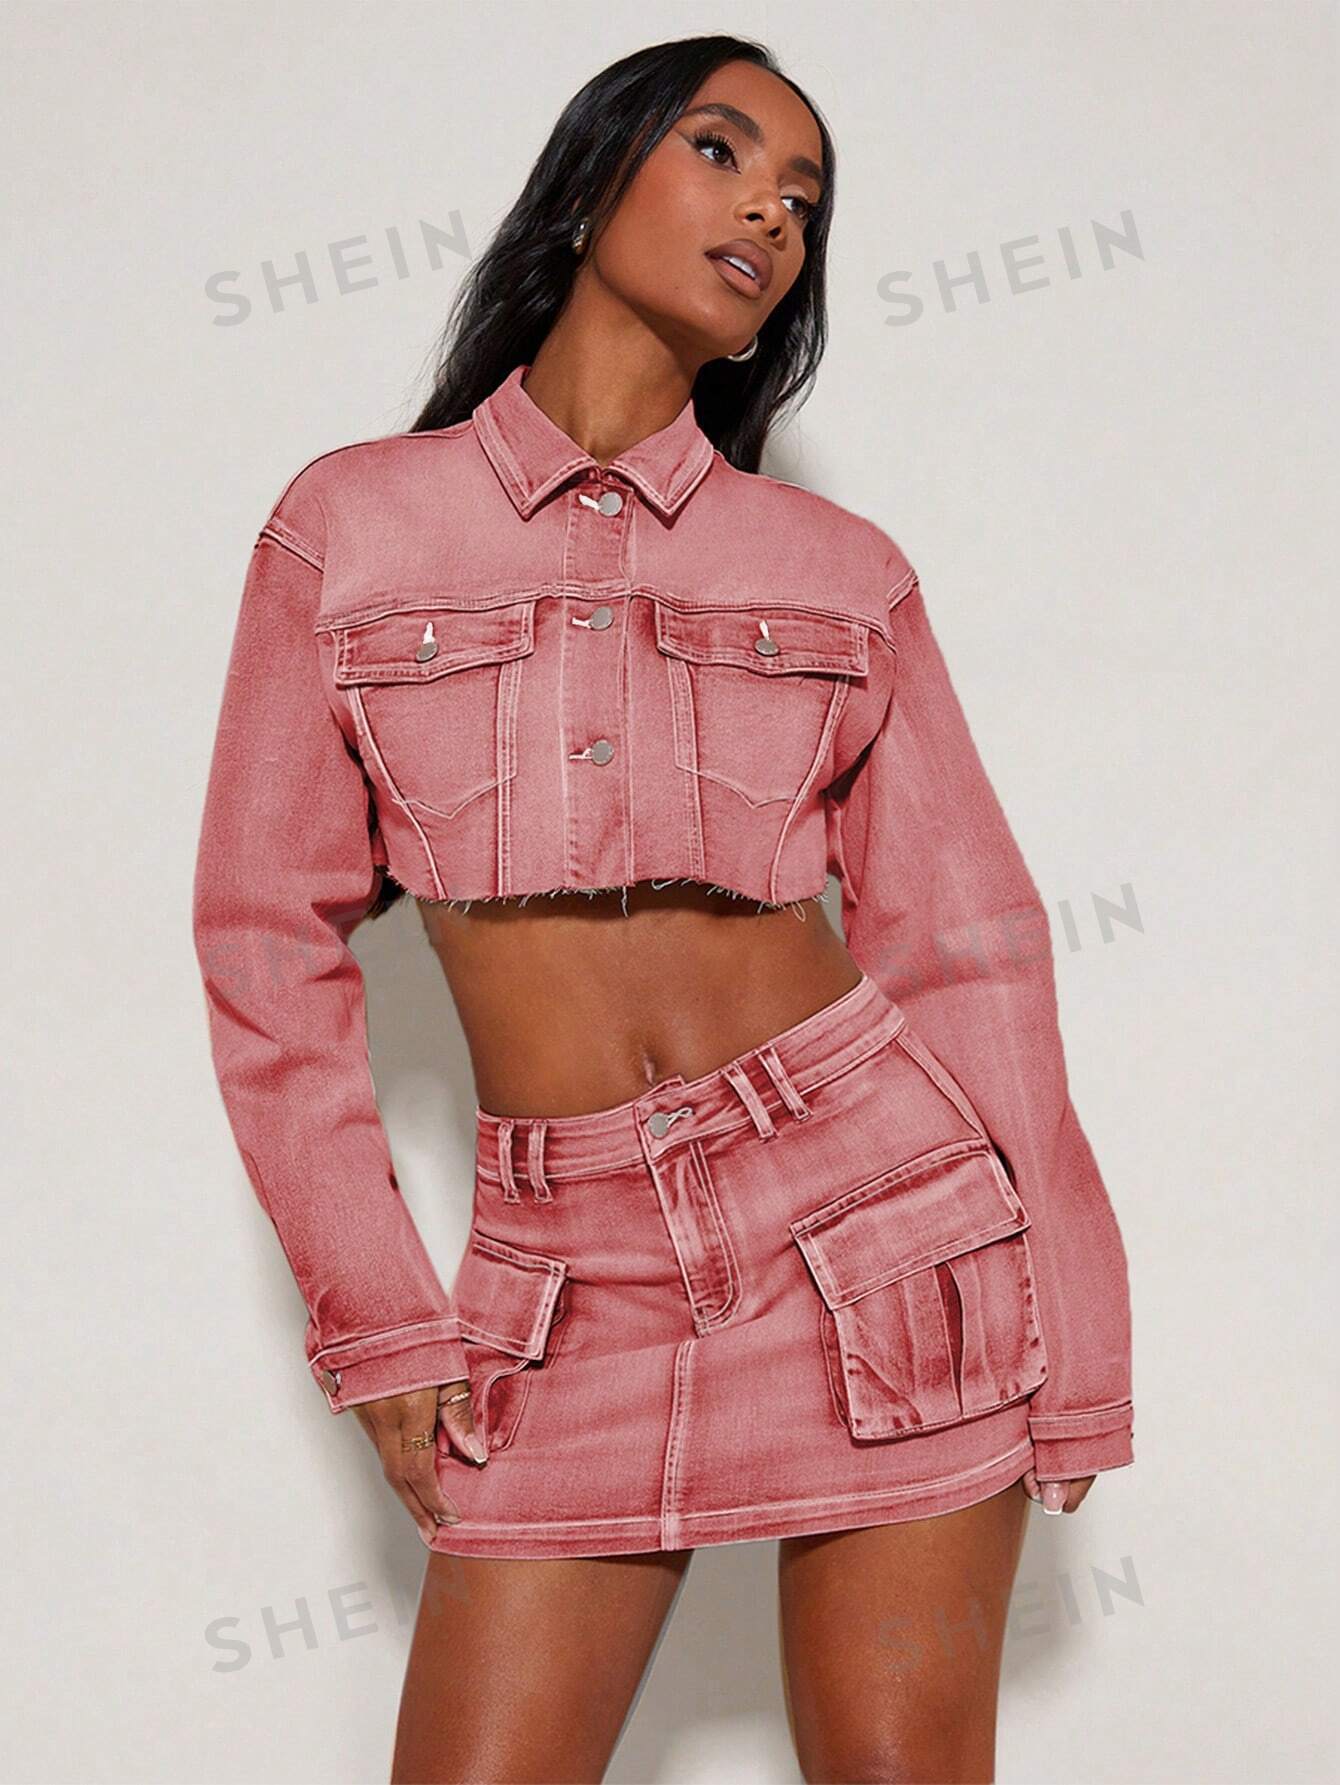 SHEIN BAE Короткая джинсовая куртка с пуговицами спереди и потертым краем, розовый куртка женская джинсовая